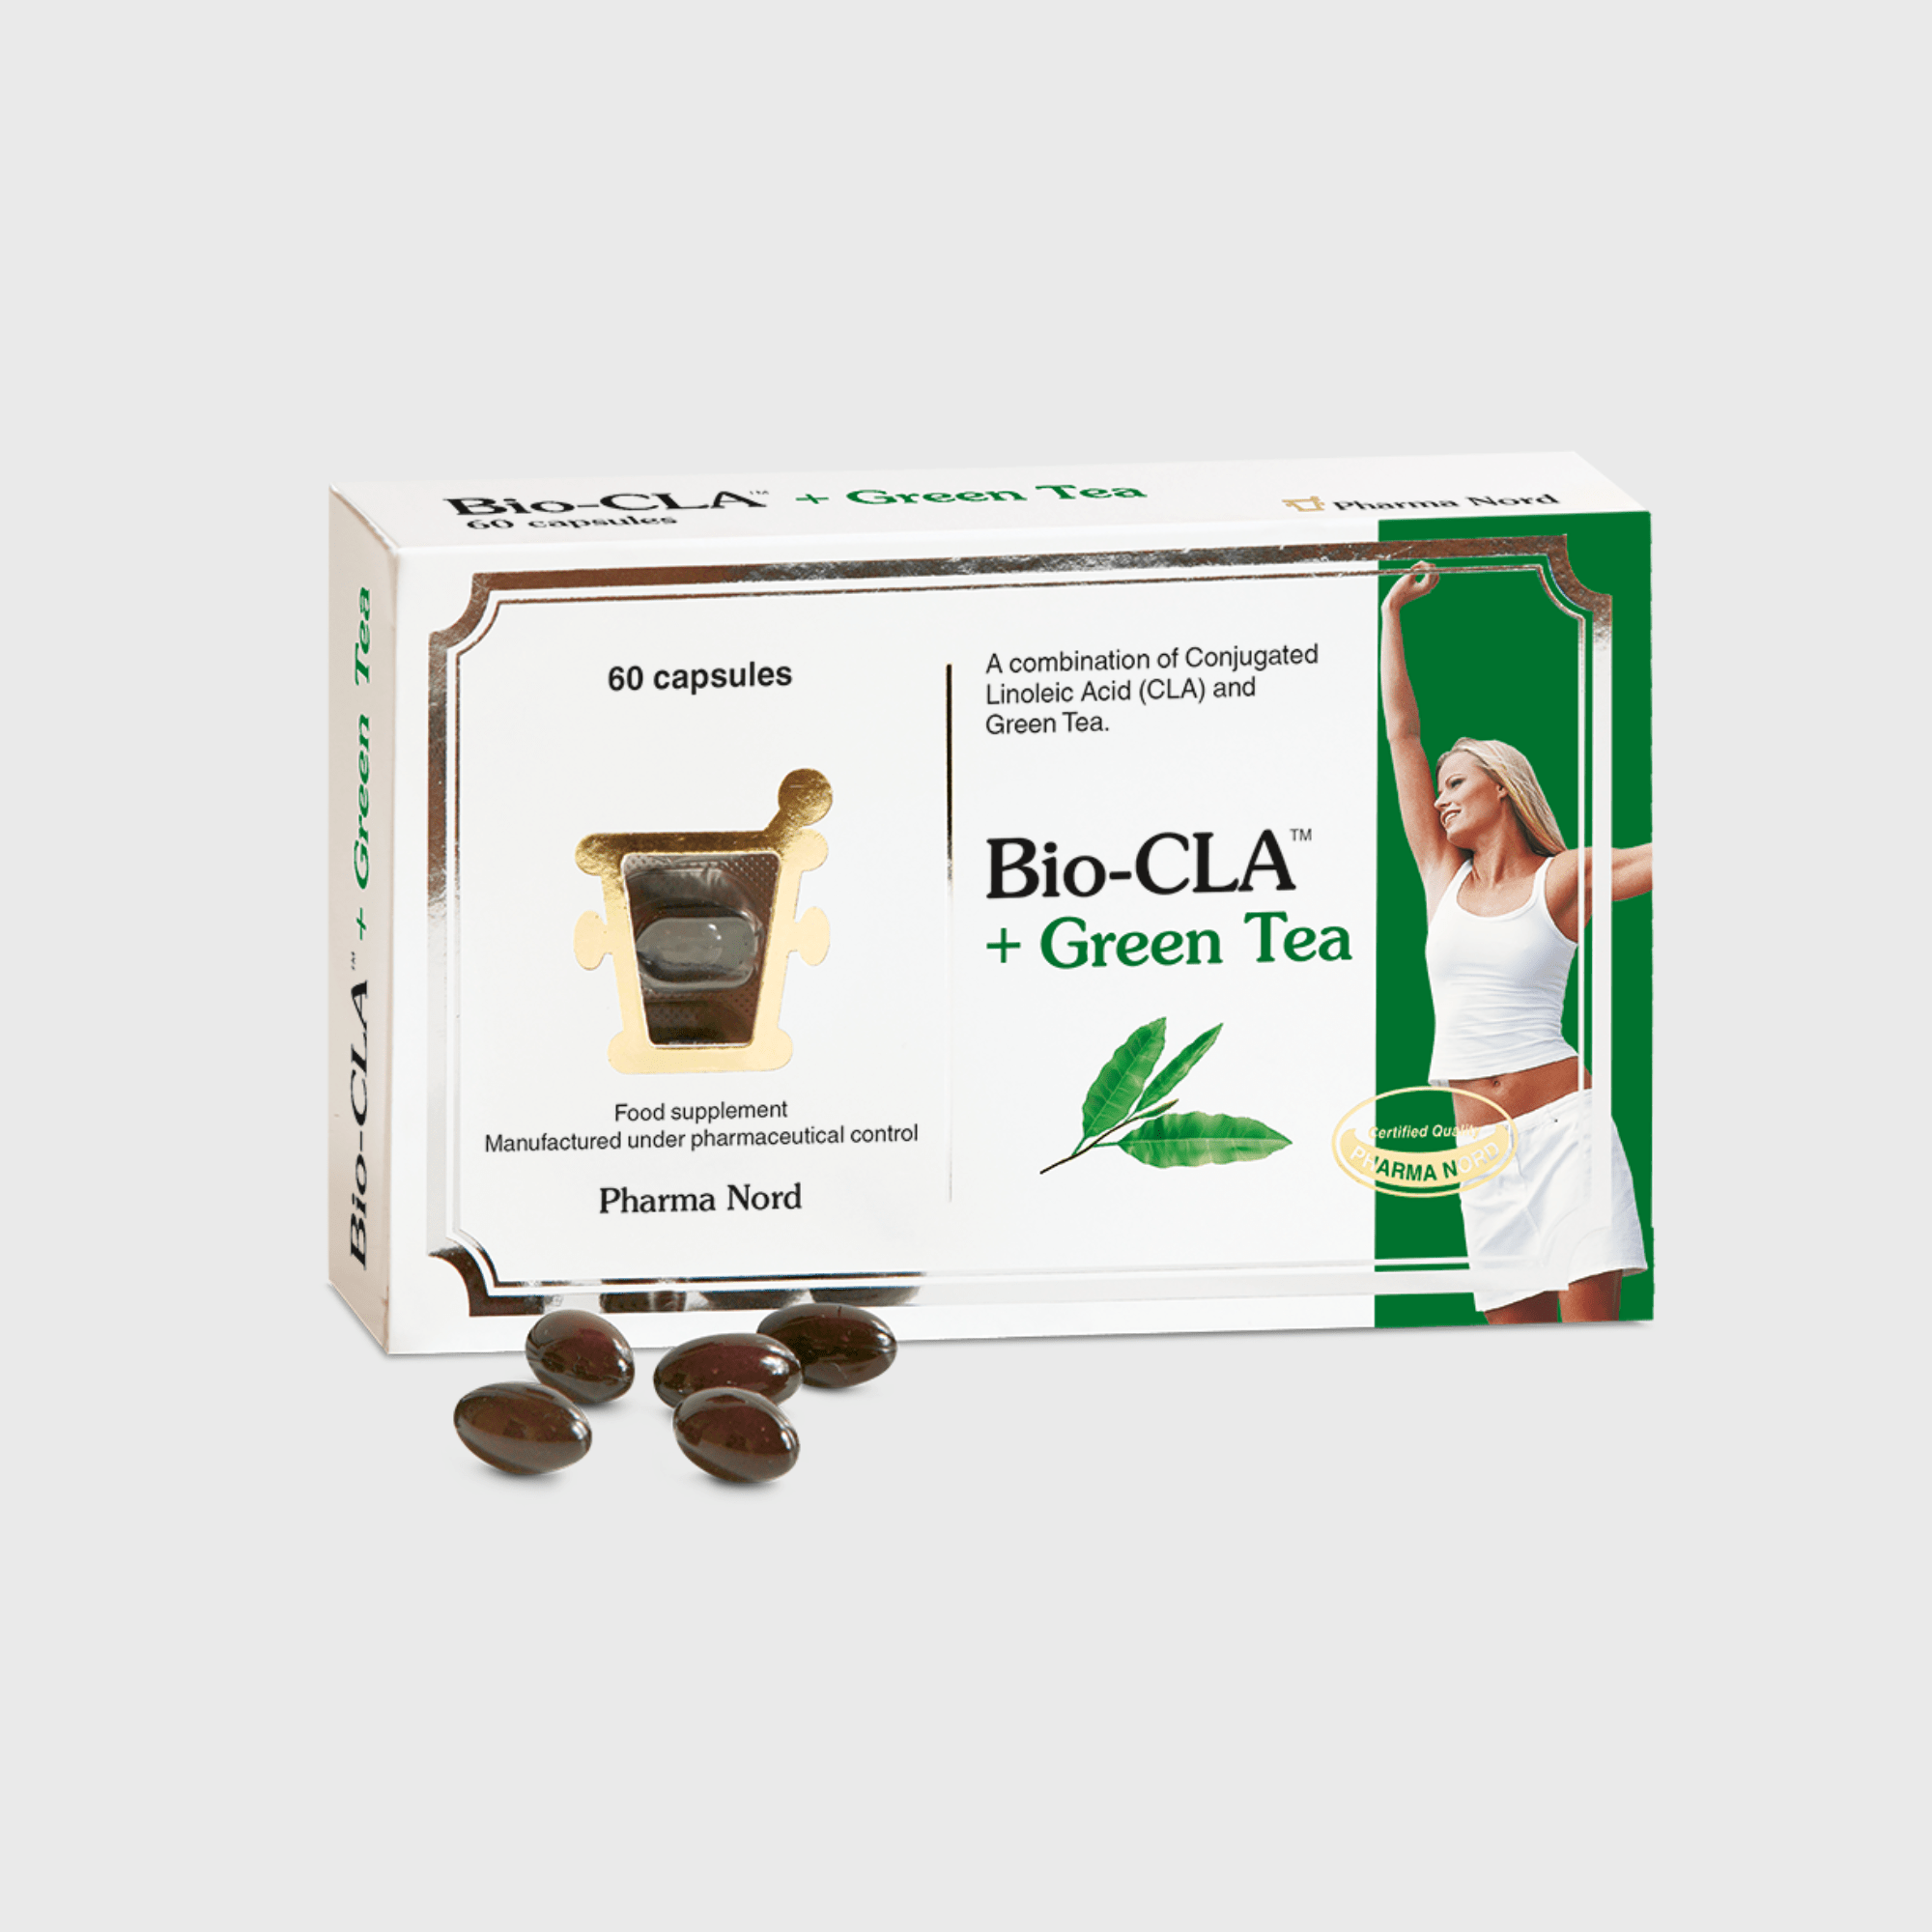 Bio-CLA + Green Tea